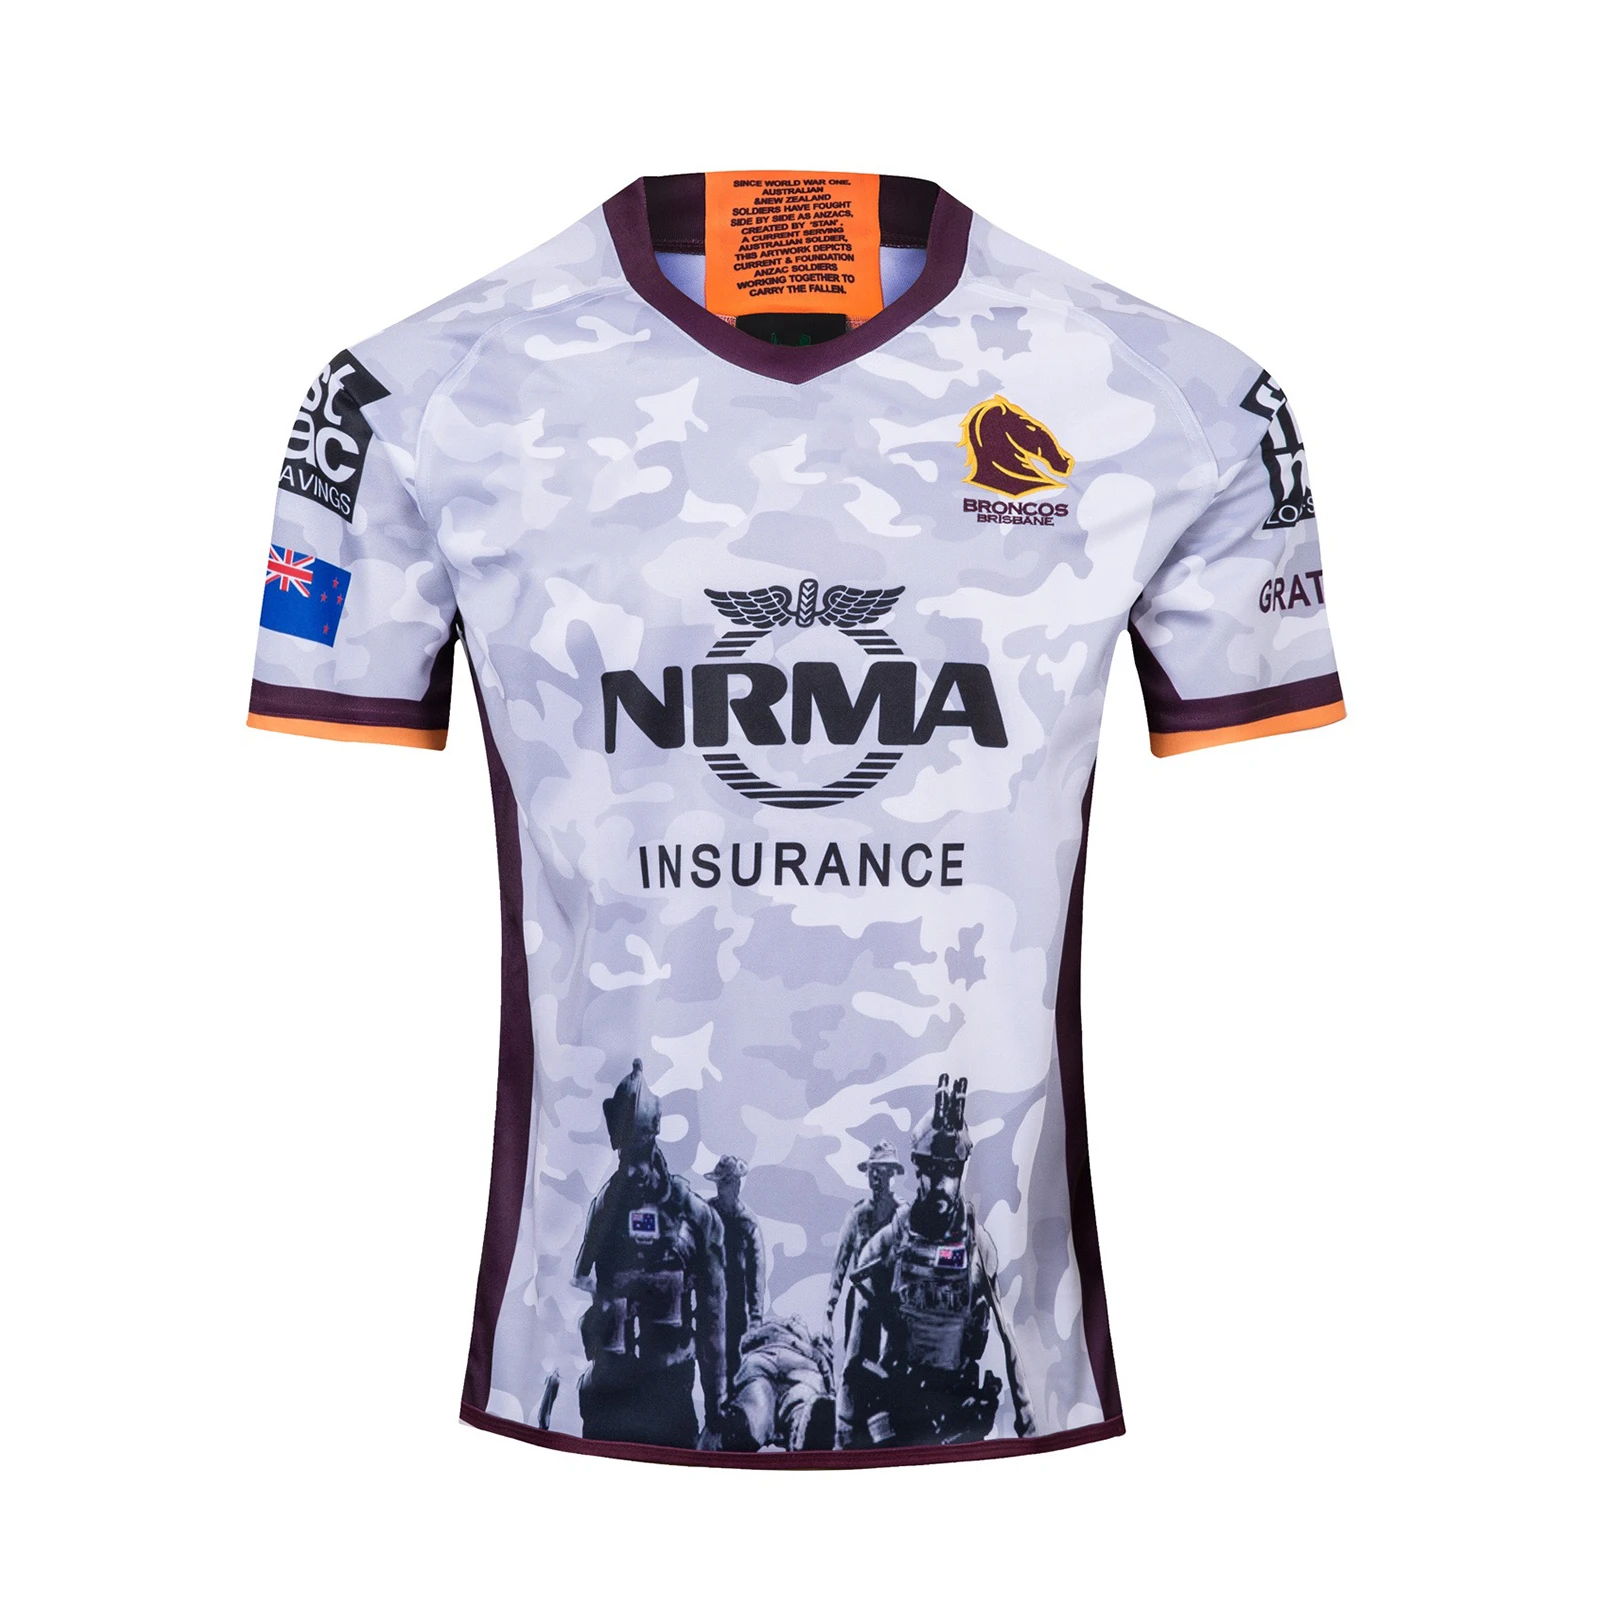 Herencia Glorioso gancho Camiseta de Rugby ANZAC para hombre, ropa para chico, de los Broncos, de  venta al por mayor, 2019|Camisetas de rugby| - AliExpress